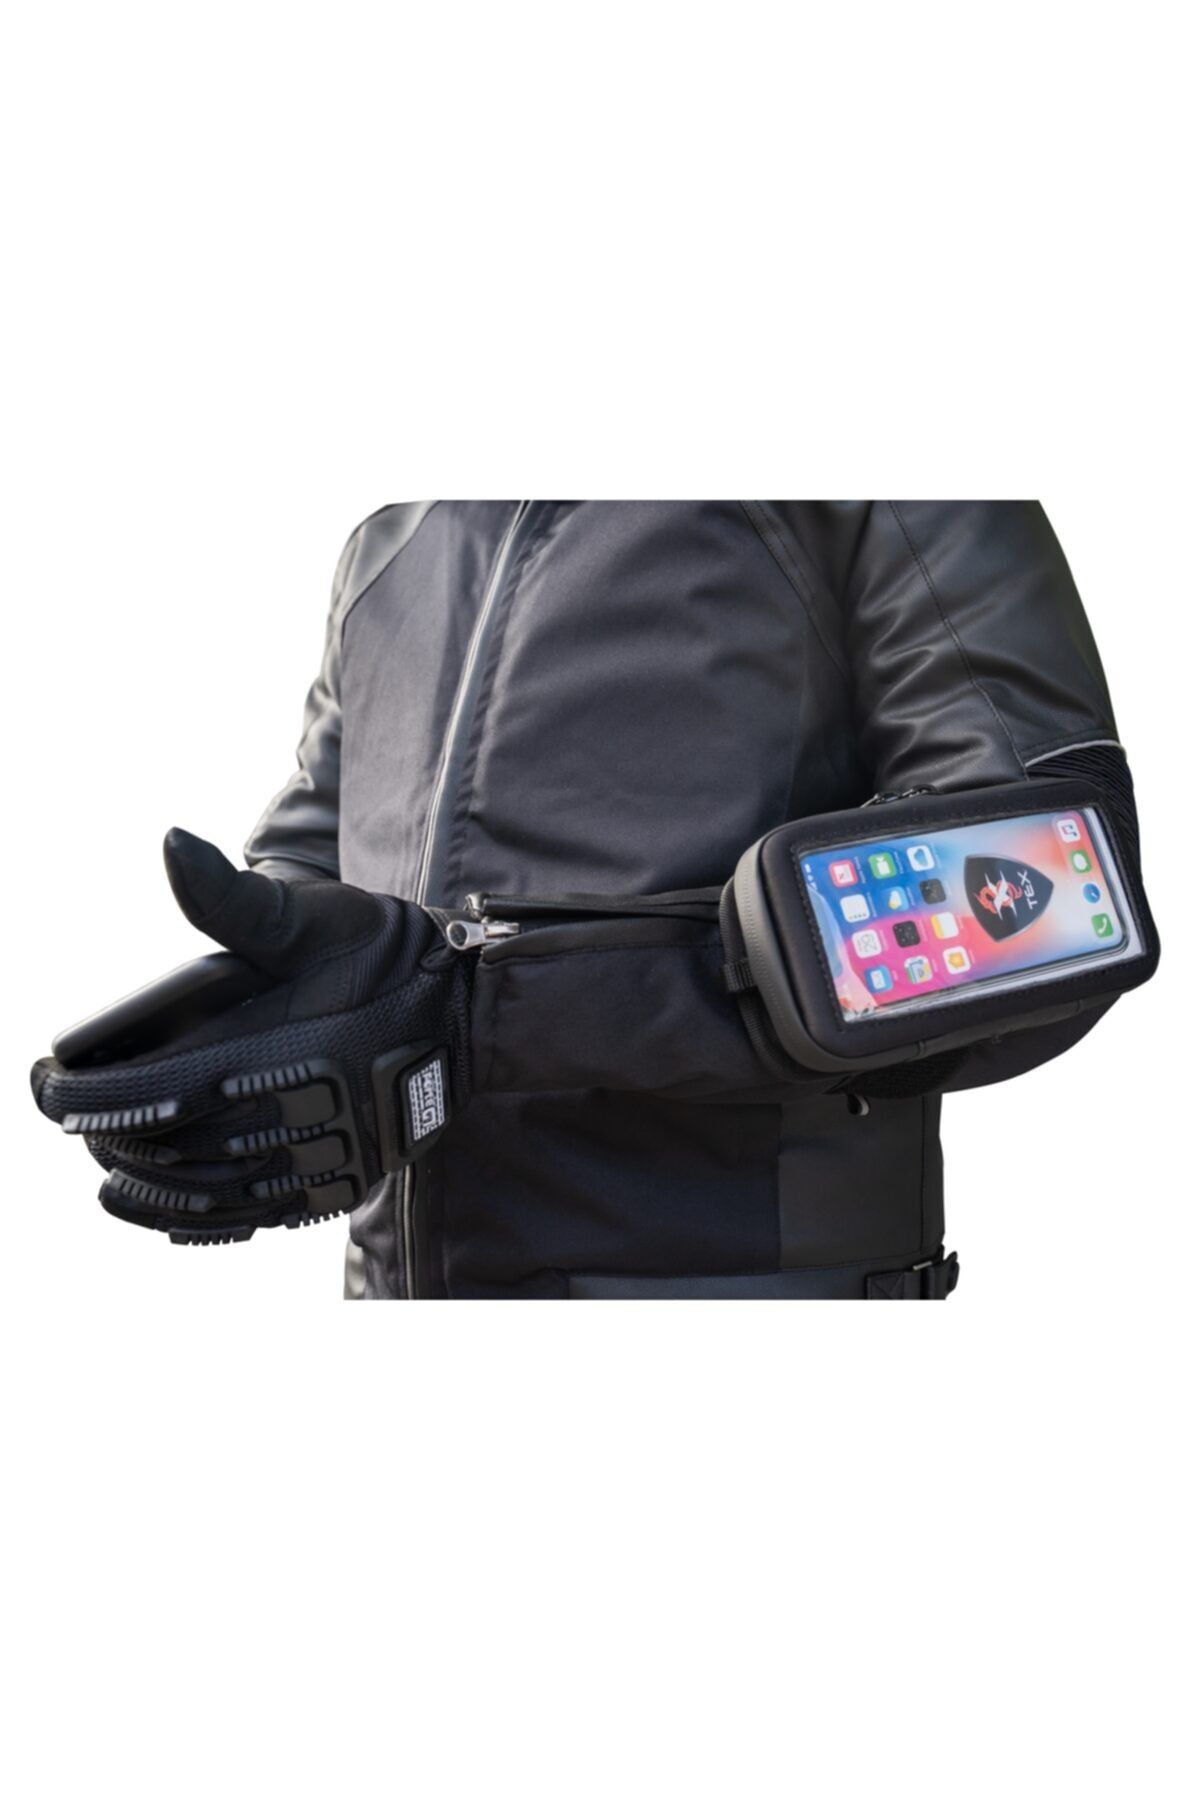 AnkaShop Kola Takılabi?li?r Özel Motosiklet Telefon Çantası Telefon Tutuculu Kol Bağlantılı Motor Çanta